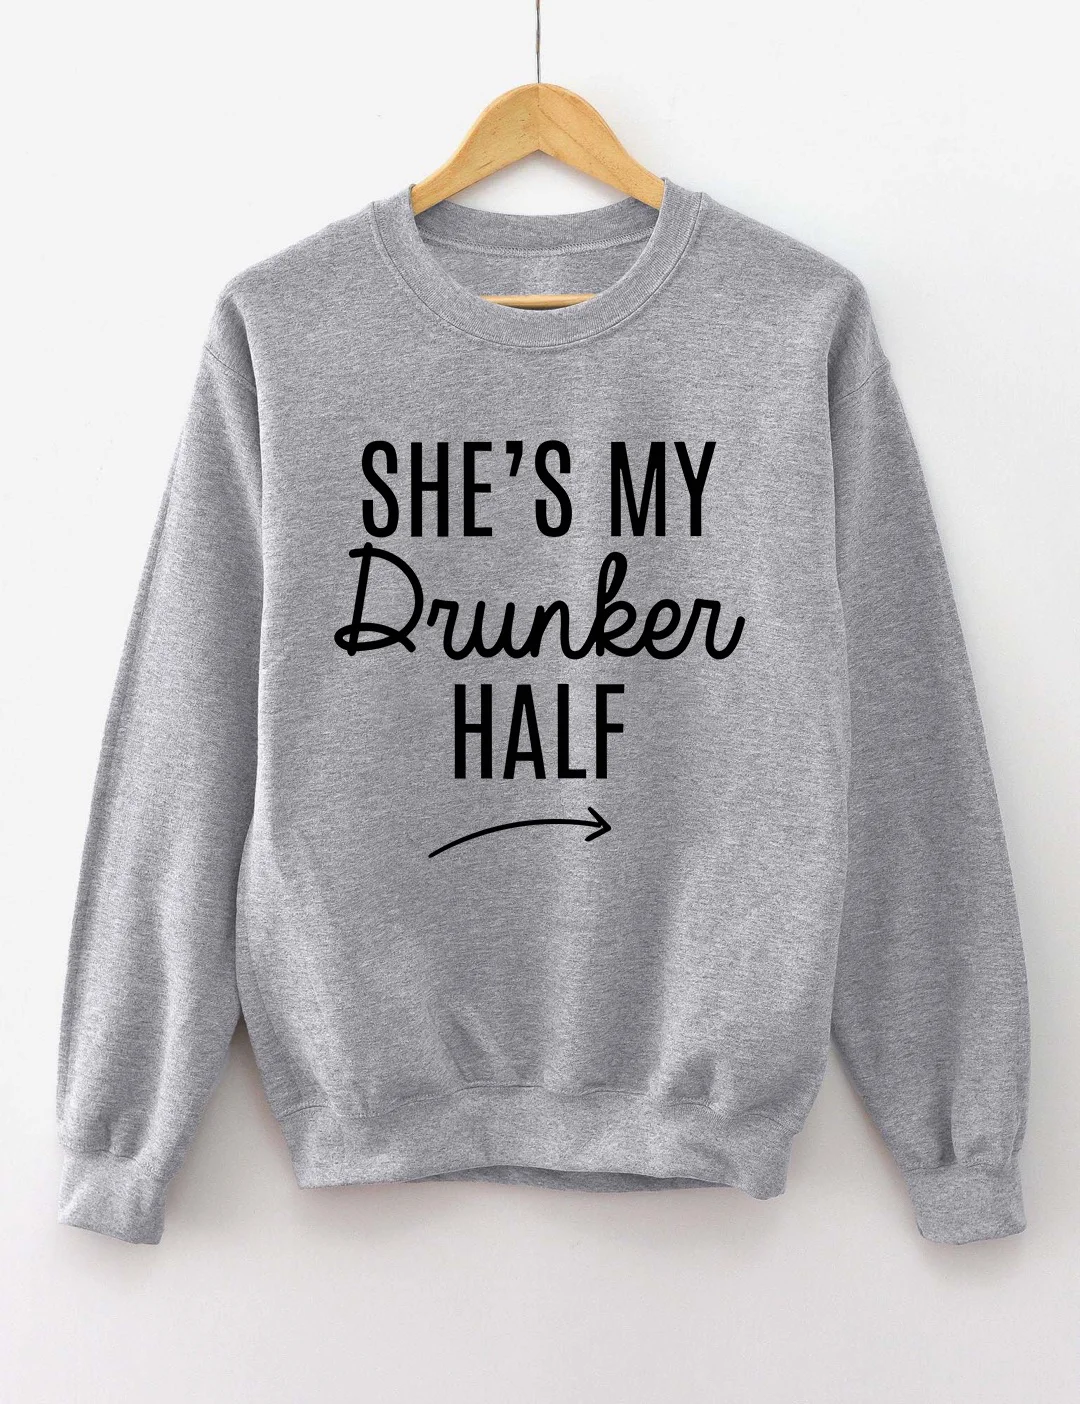 She's My Drunker Half Matching Sweatshirt